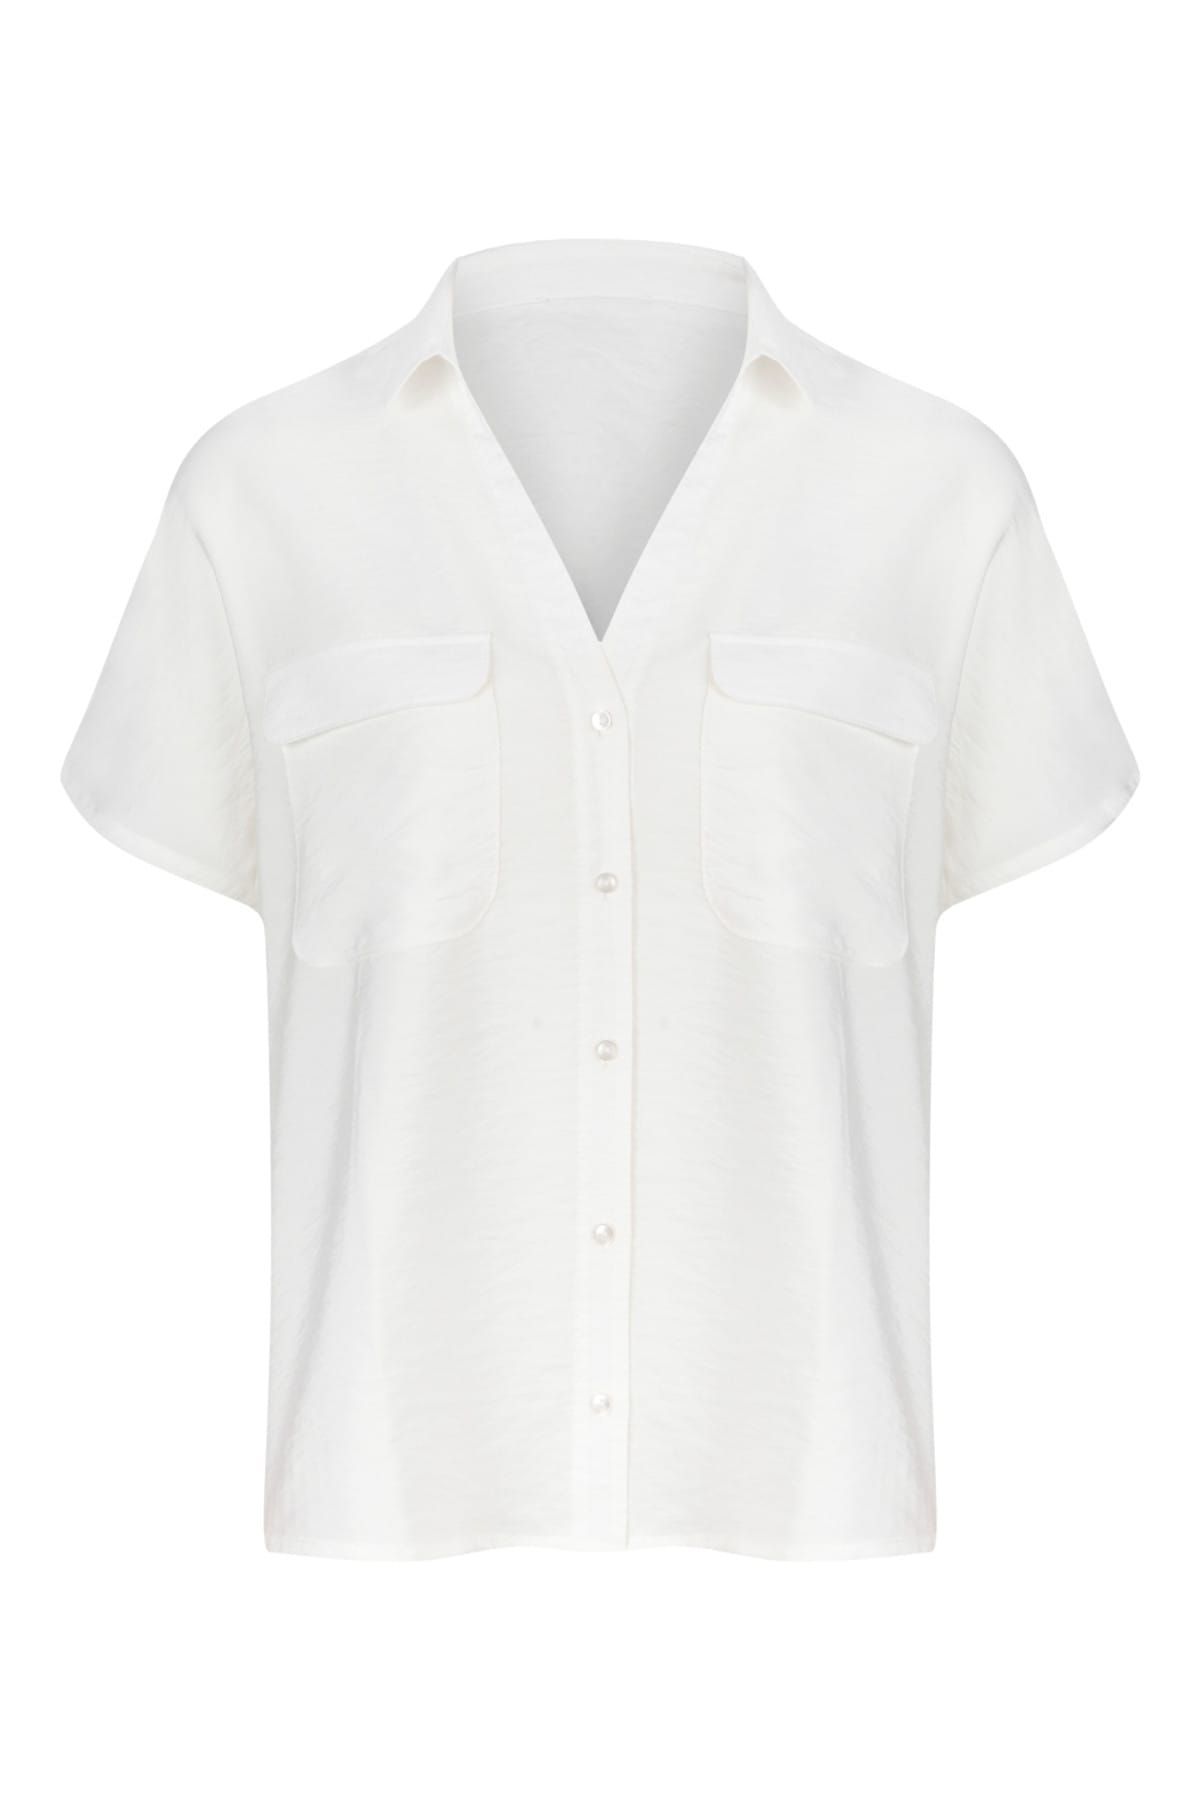 Mudo Kadın Beyaz Cep Detaylı Regular Business Gömlek 338908